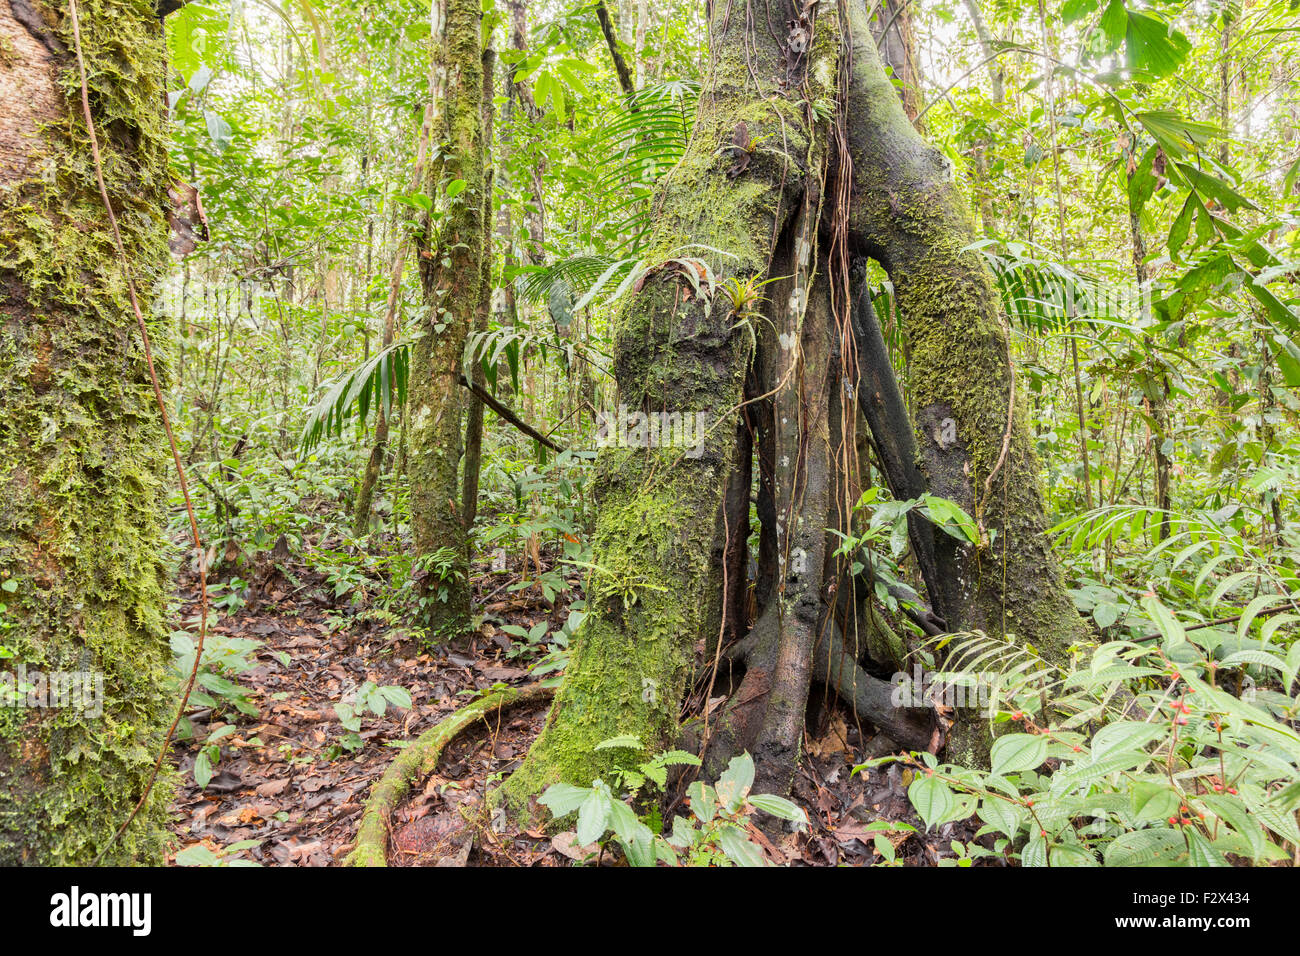 Albero con stilt radici nell'Amazzonia ecuadoriana. Immagine hdr Foto Stock